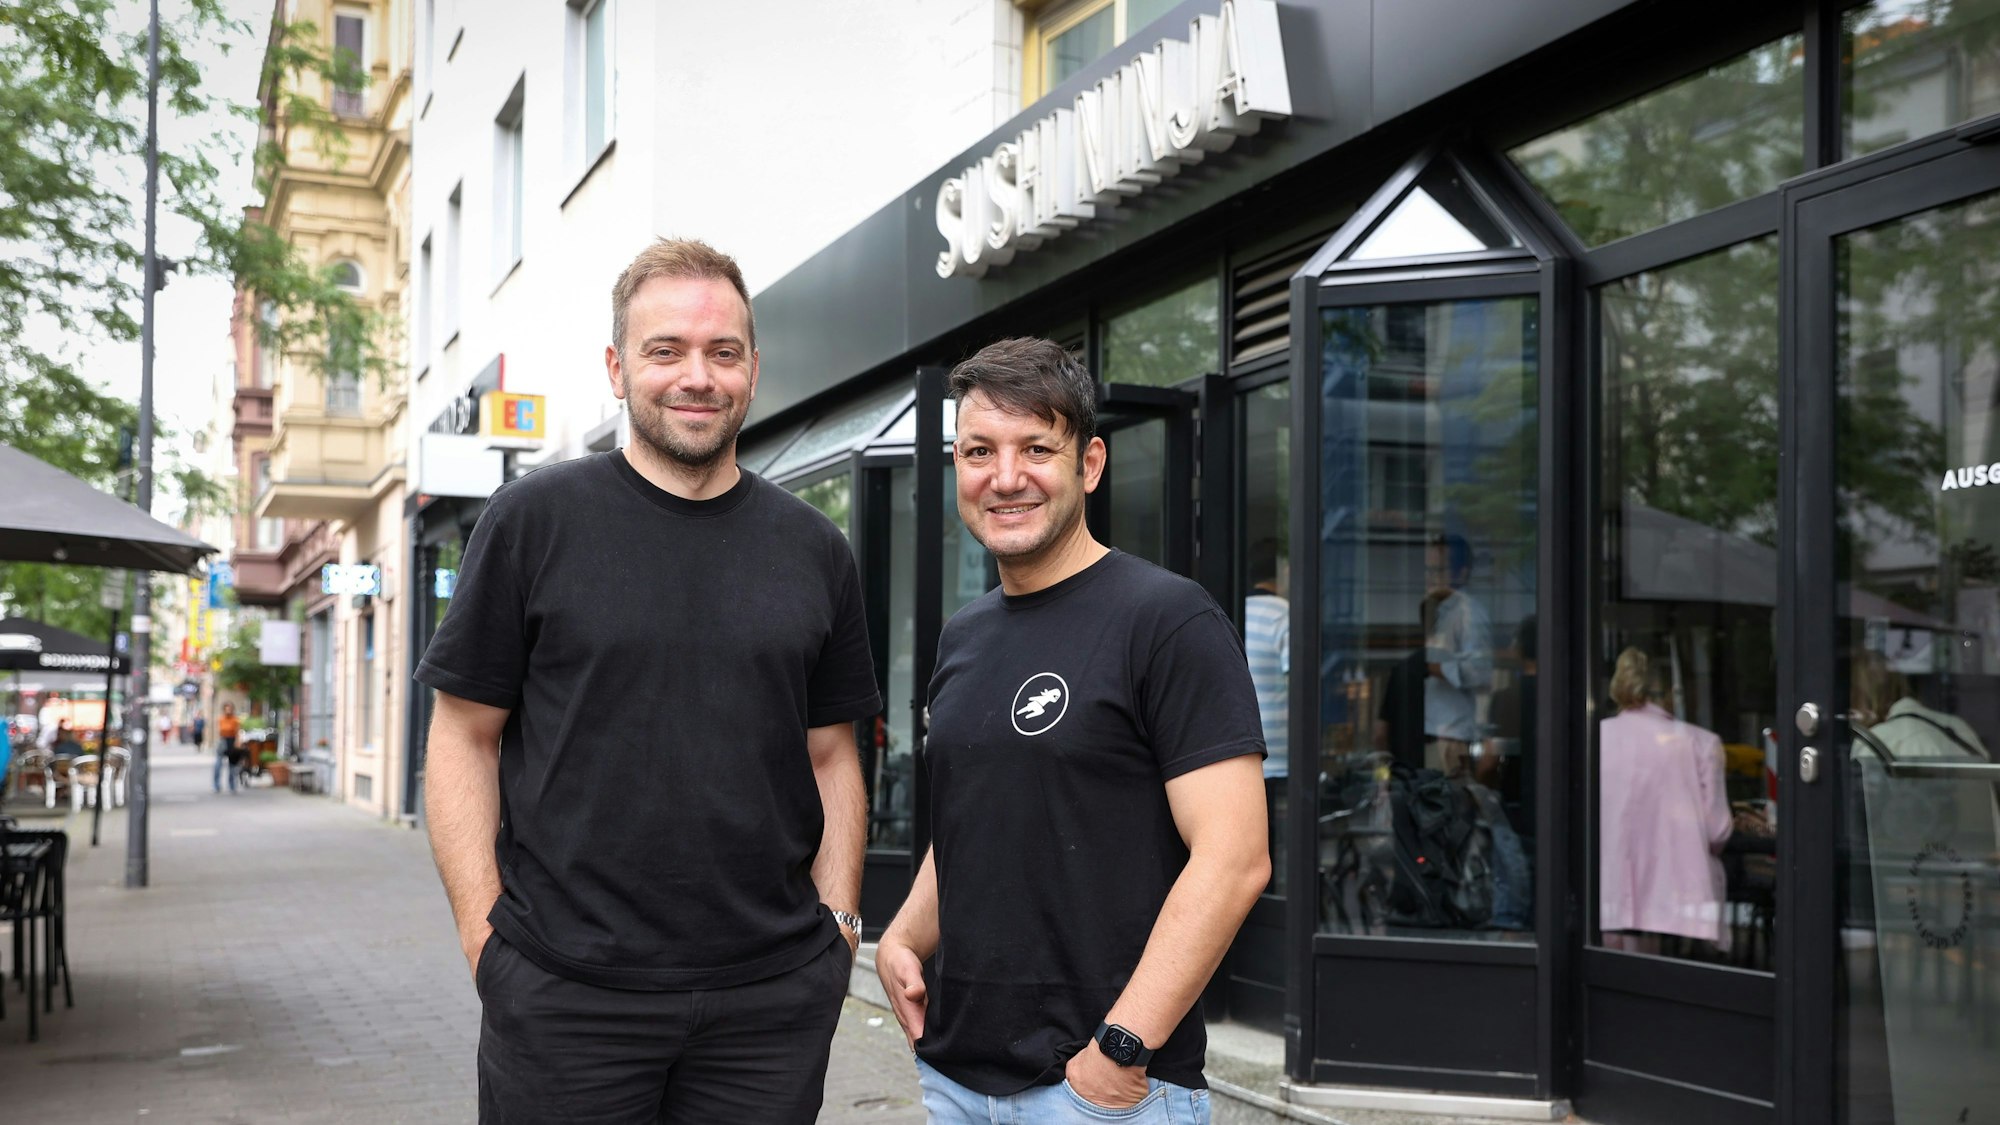 David Keuenhof und Sofien Kouraichi stehen vor einem von drei Kölner Sushi-Ninja-Restaurants. Sie tragen dunkle T-Shirts.